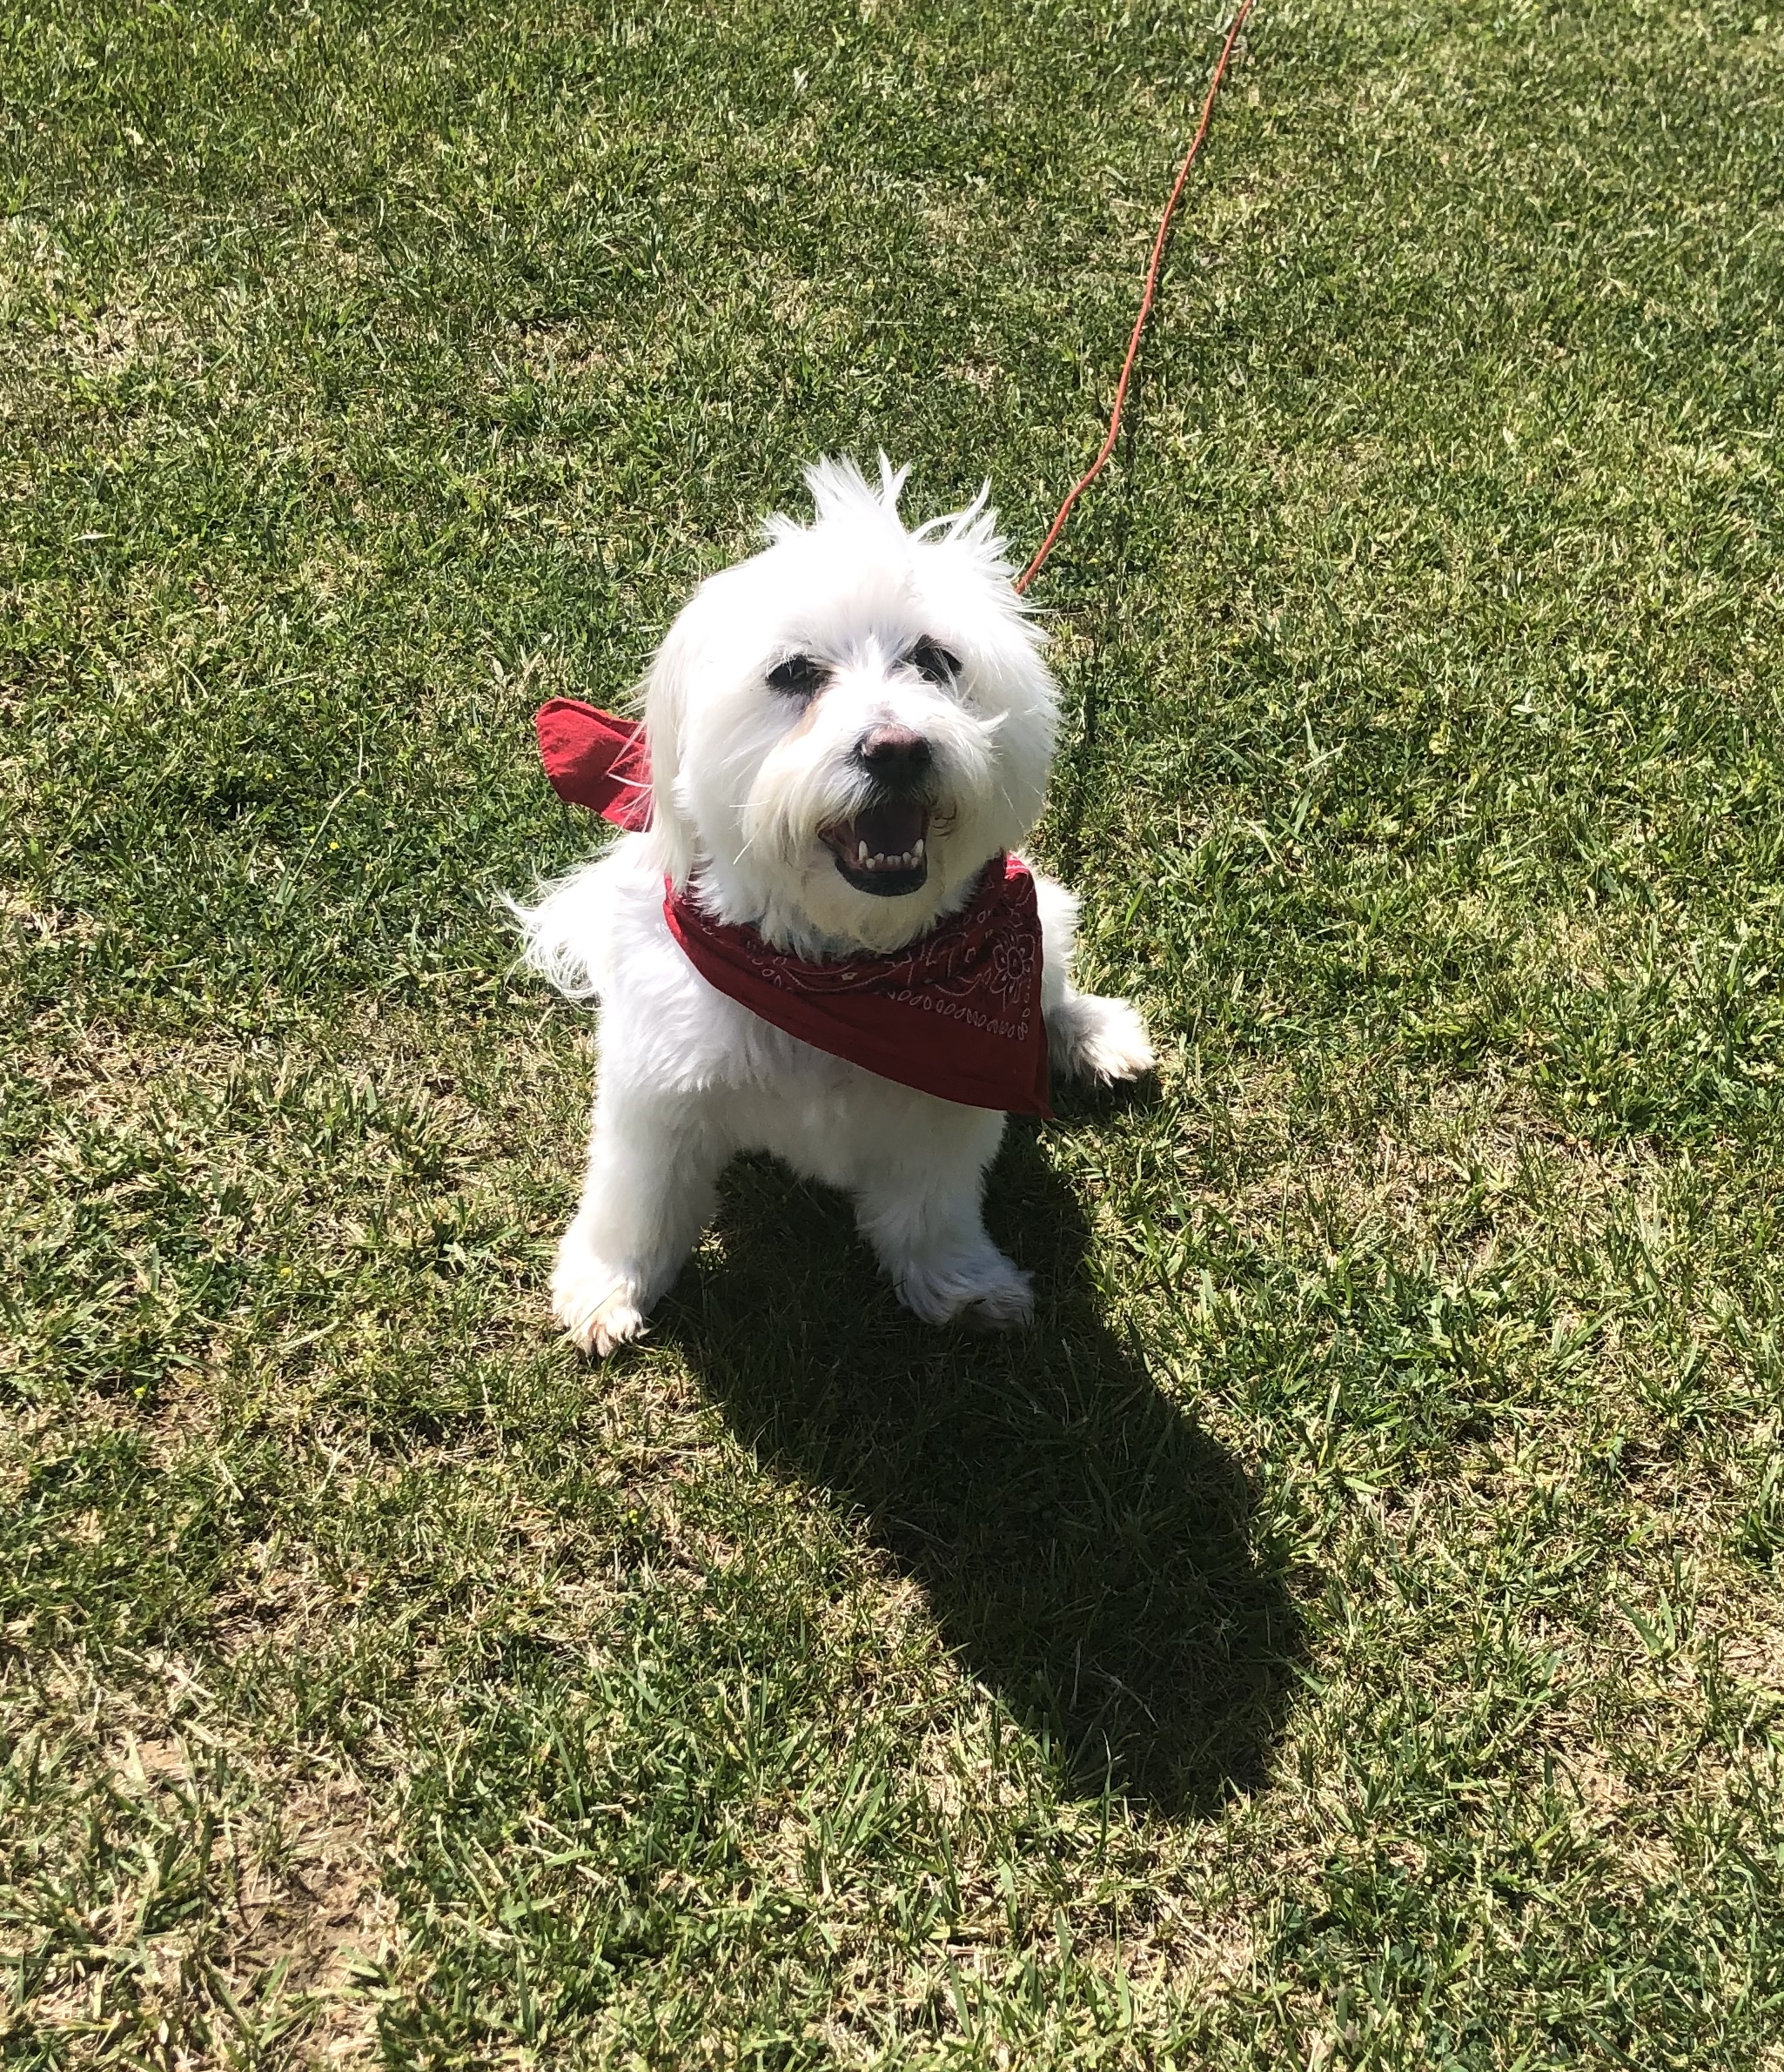 Small white dog wearing a red bandana around its neck